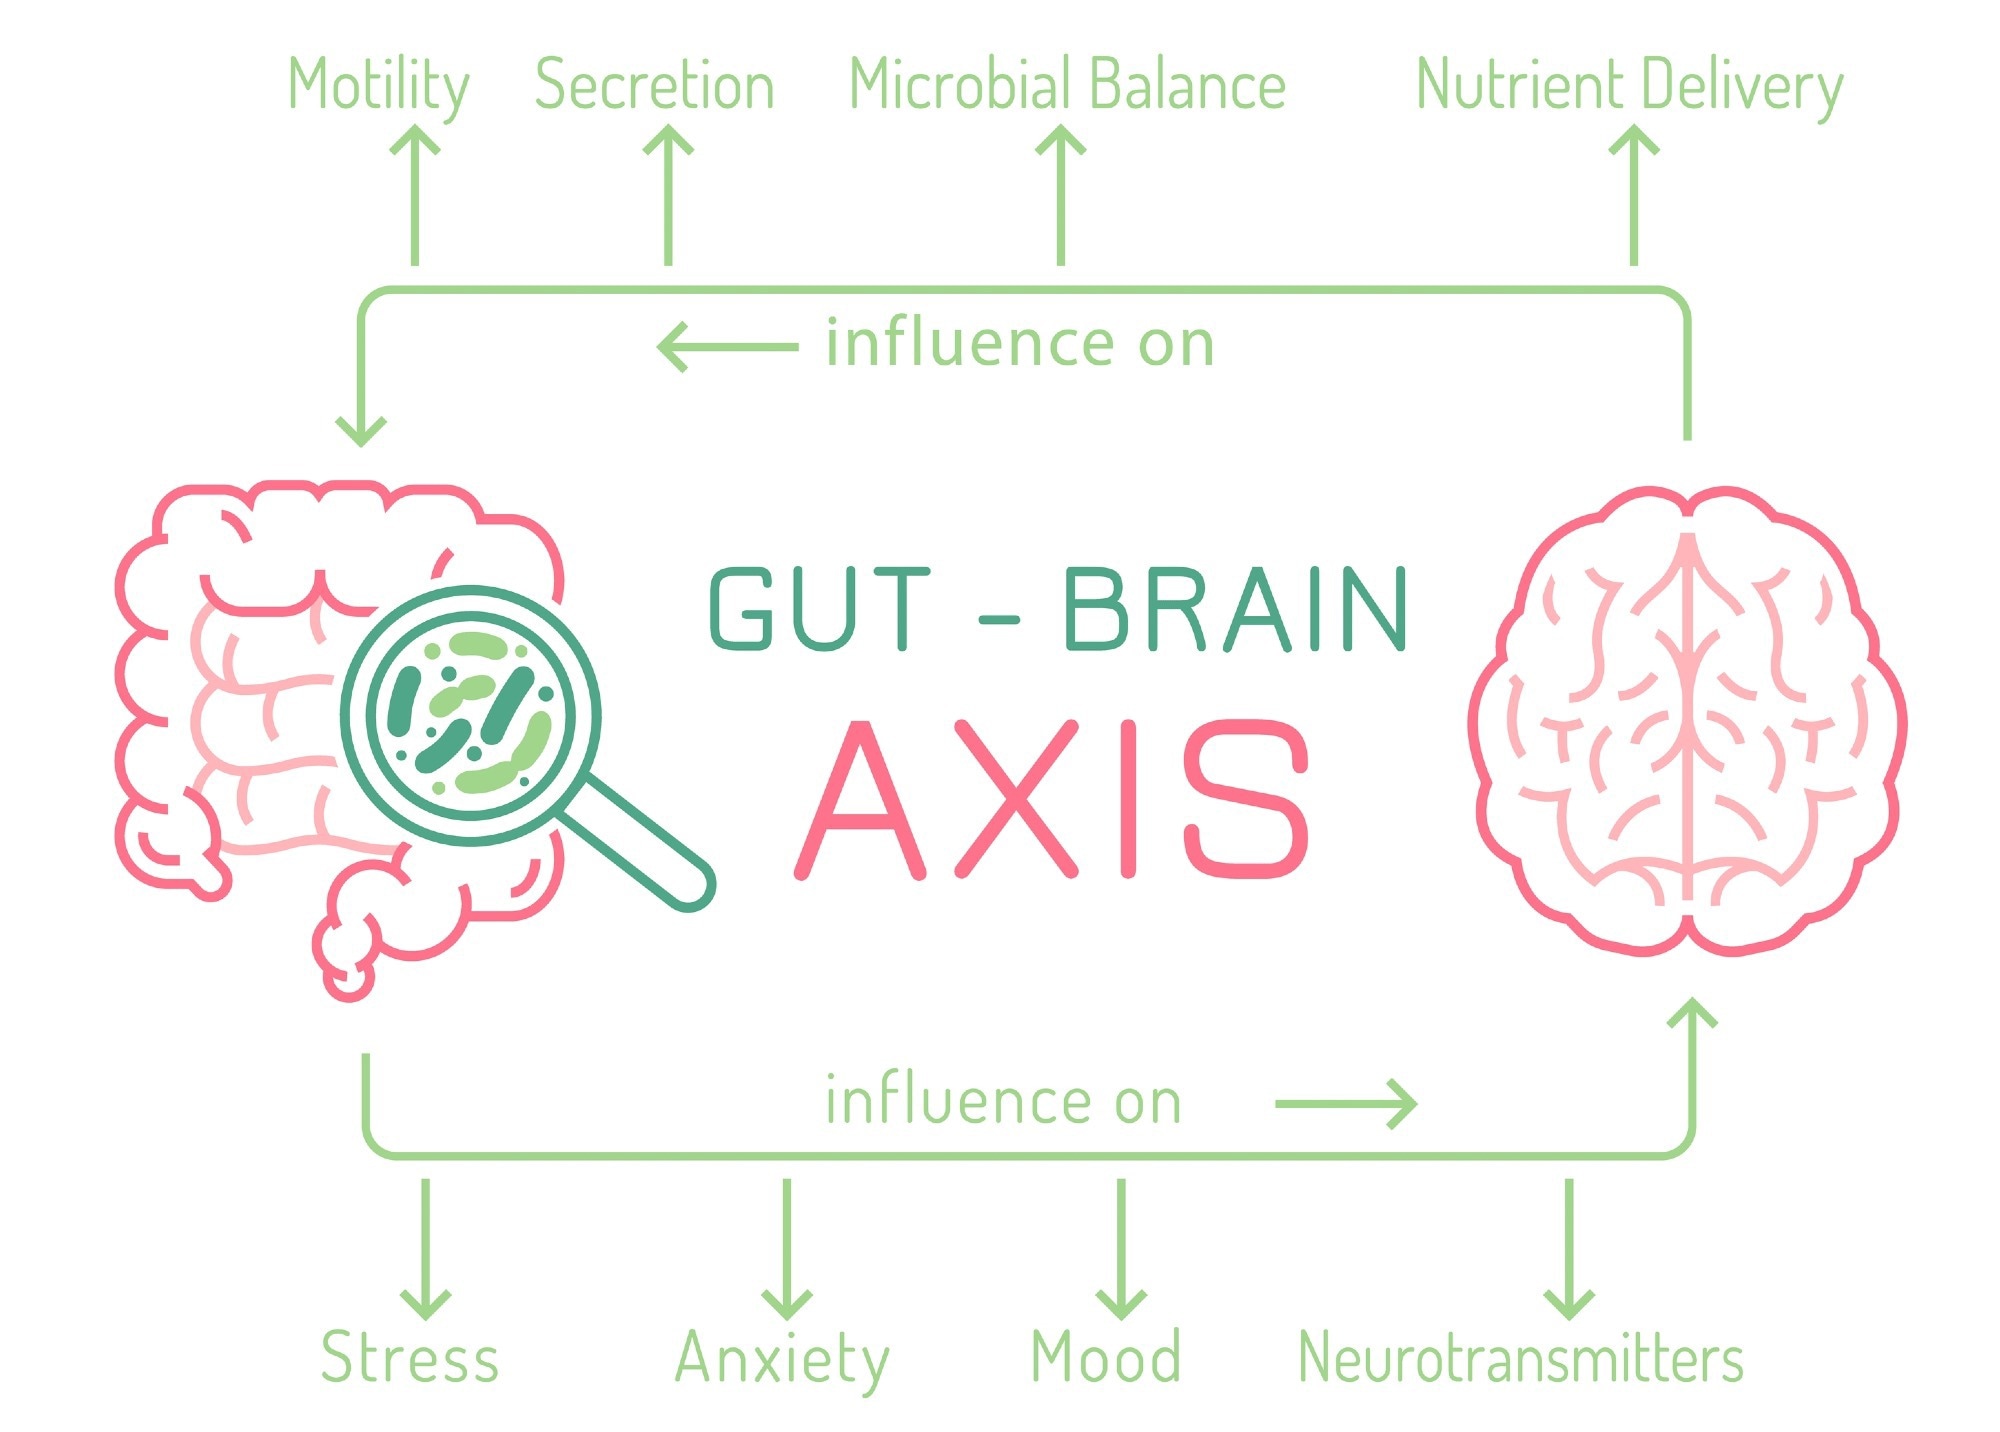 Gut-brain axis